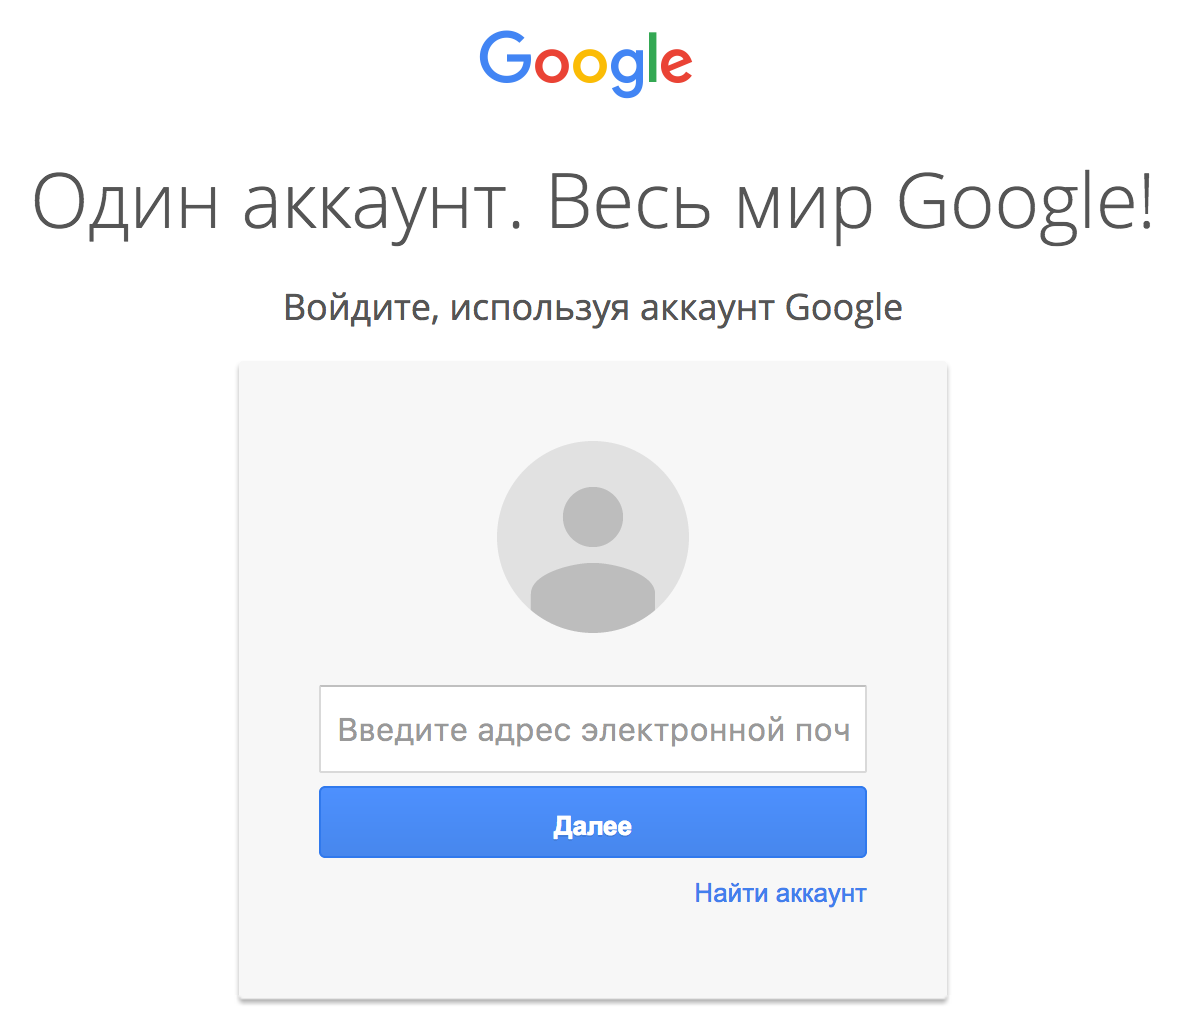 Создание учетной записи google на android: как зарегистрировать и настроить аккаунт